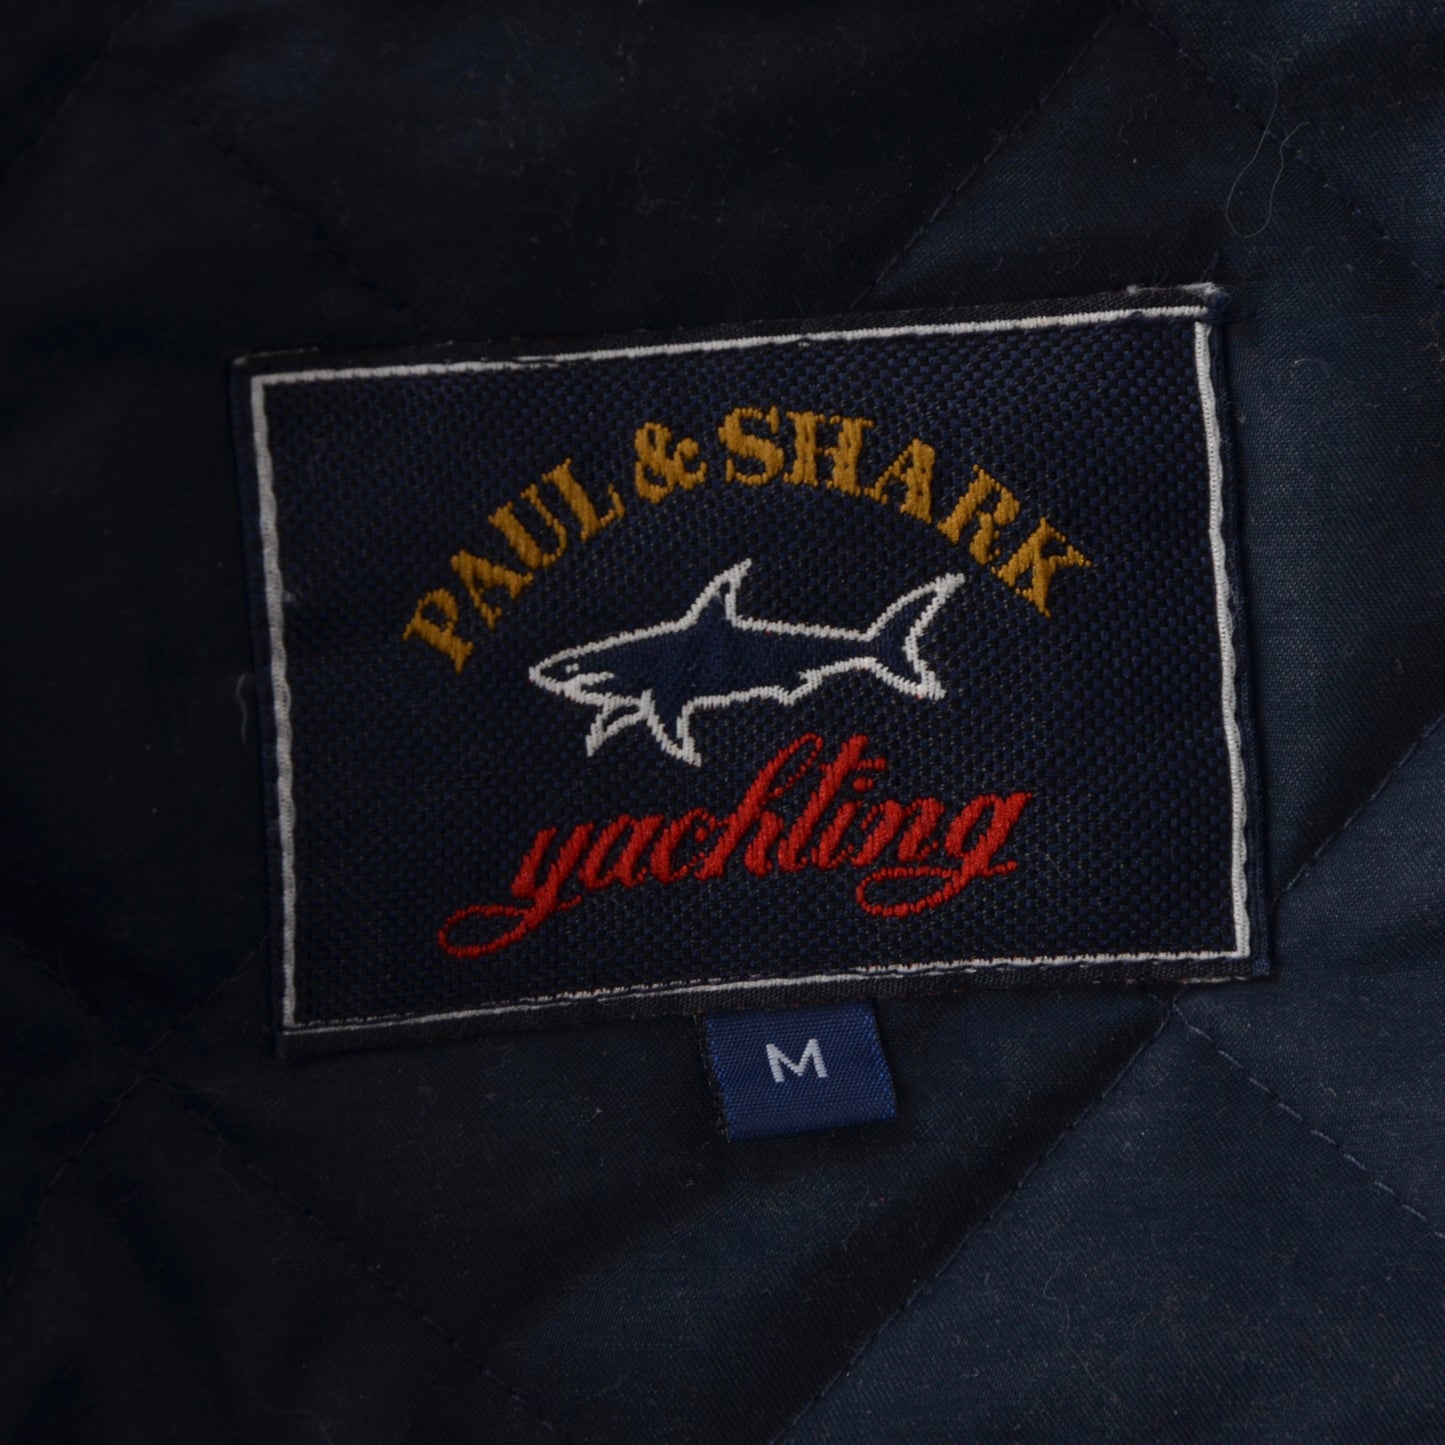 Paul &amp; Shark Yachting Weste/Gilet Größe M - Navy